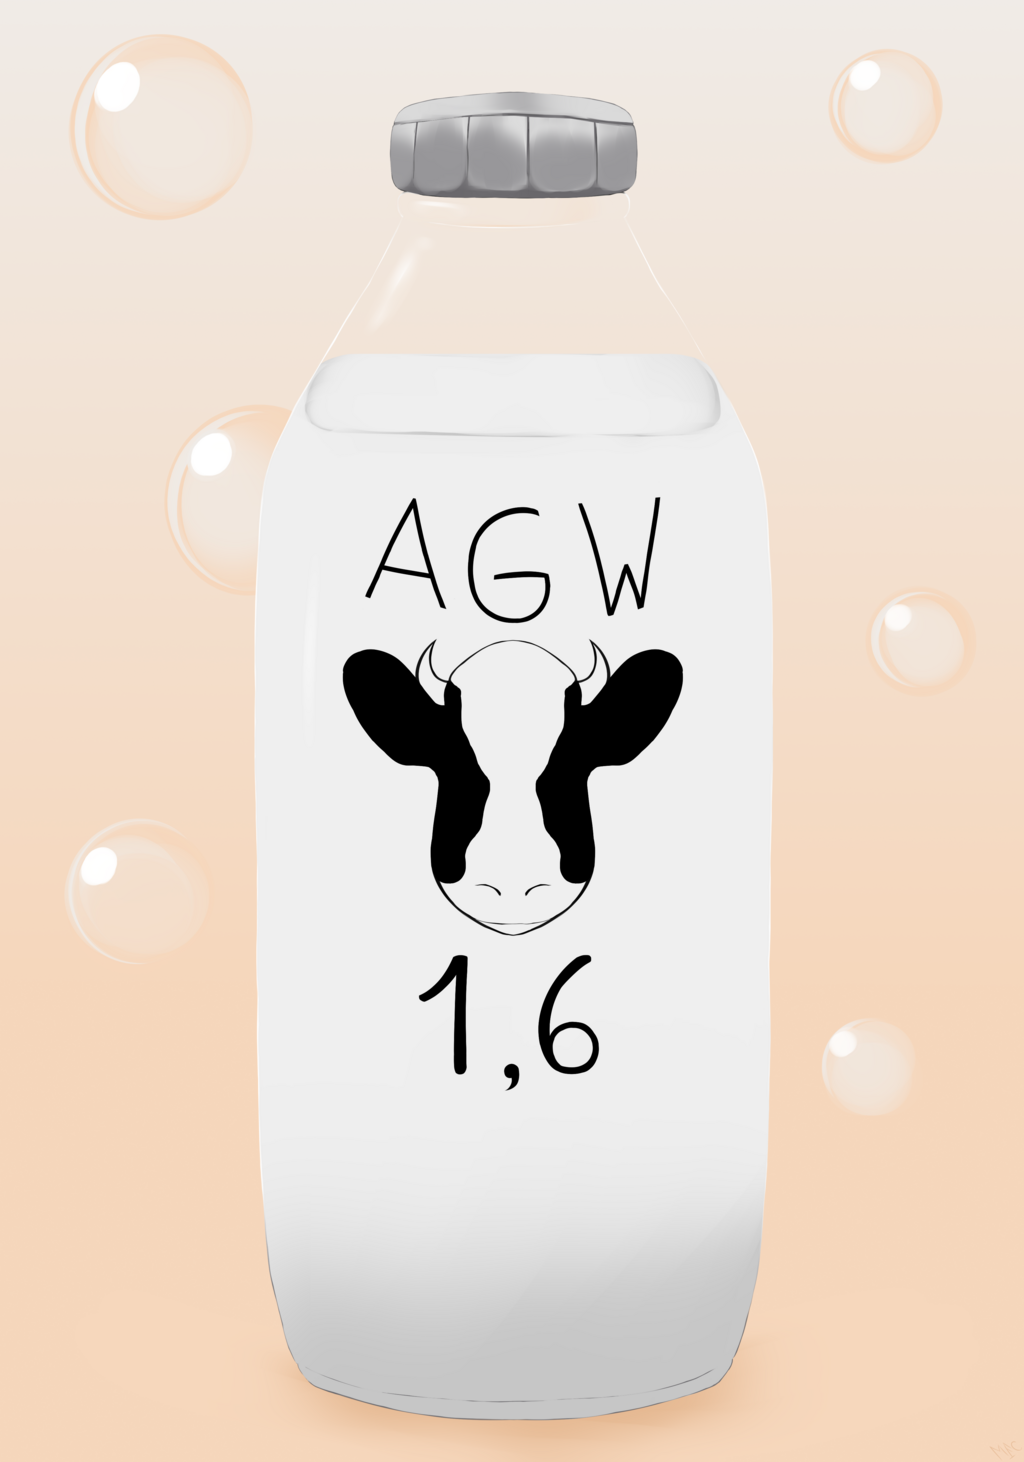 Flask of AGW 1.6